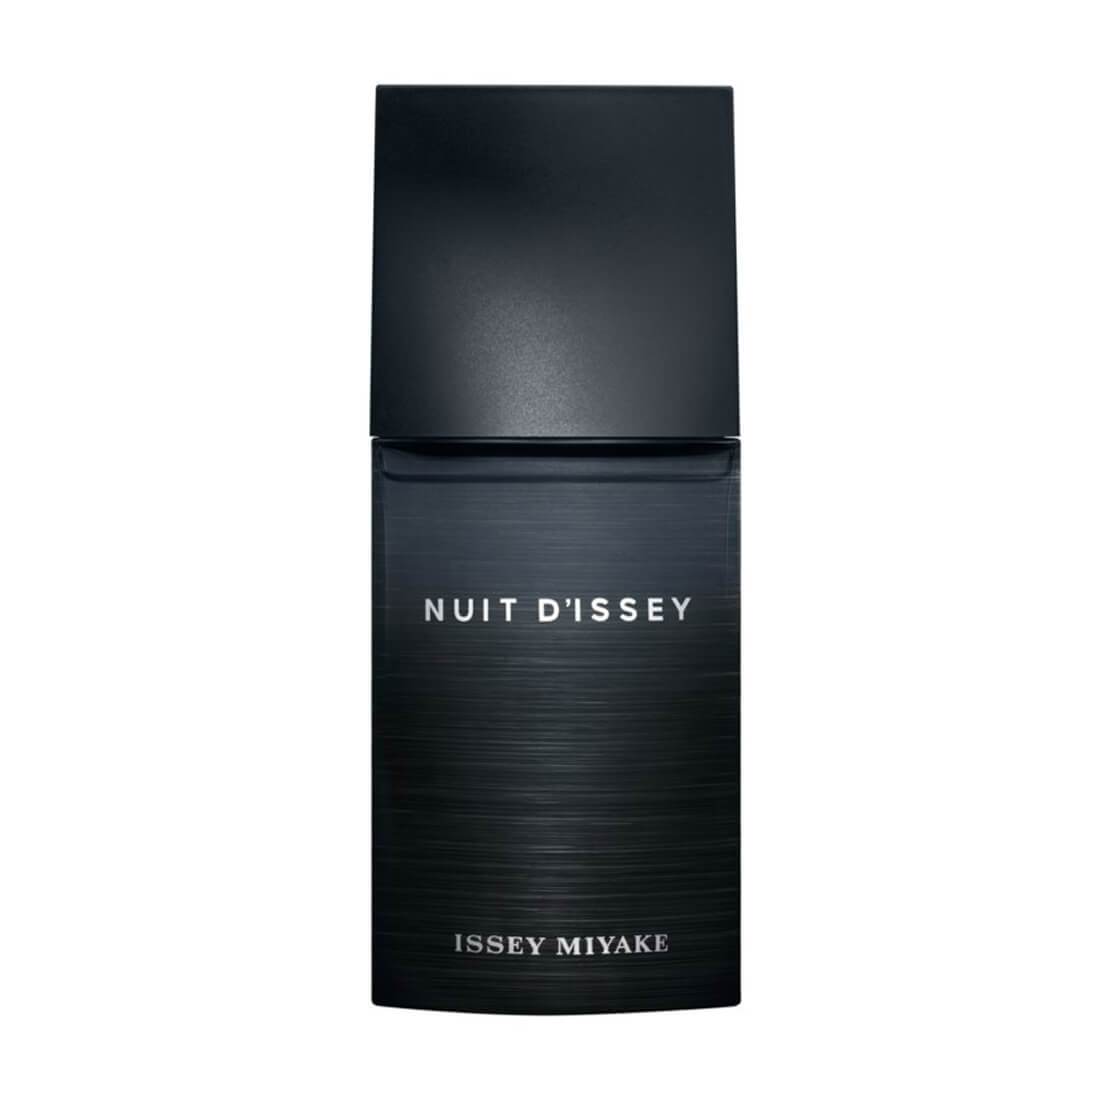 Issey Miyake Nuit D'issey Edt For Men 125 ml-Perfume - Allurebeautypk